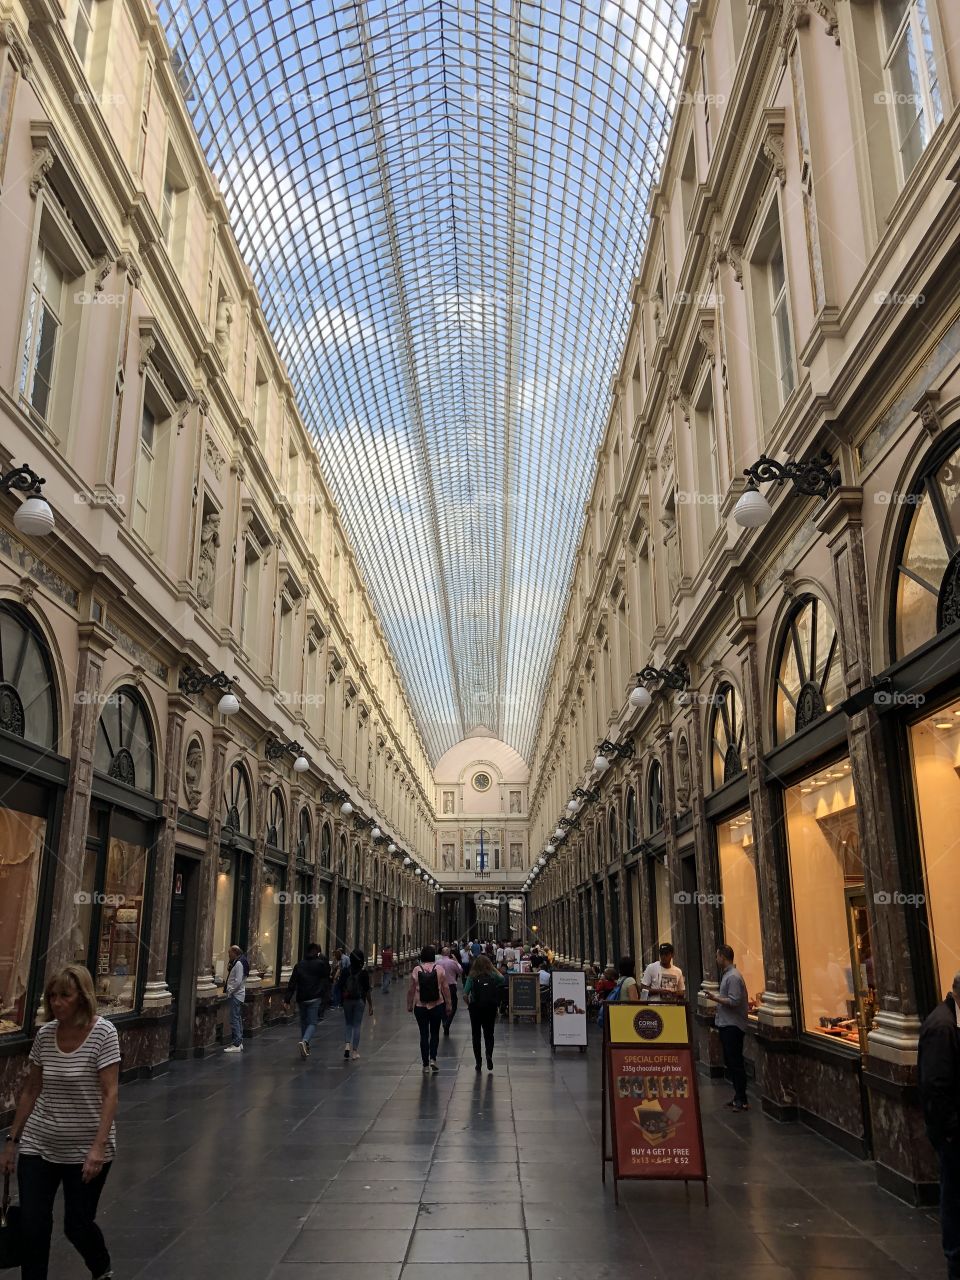 Bruxelles shopping area